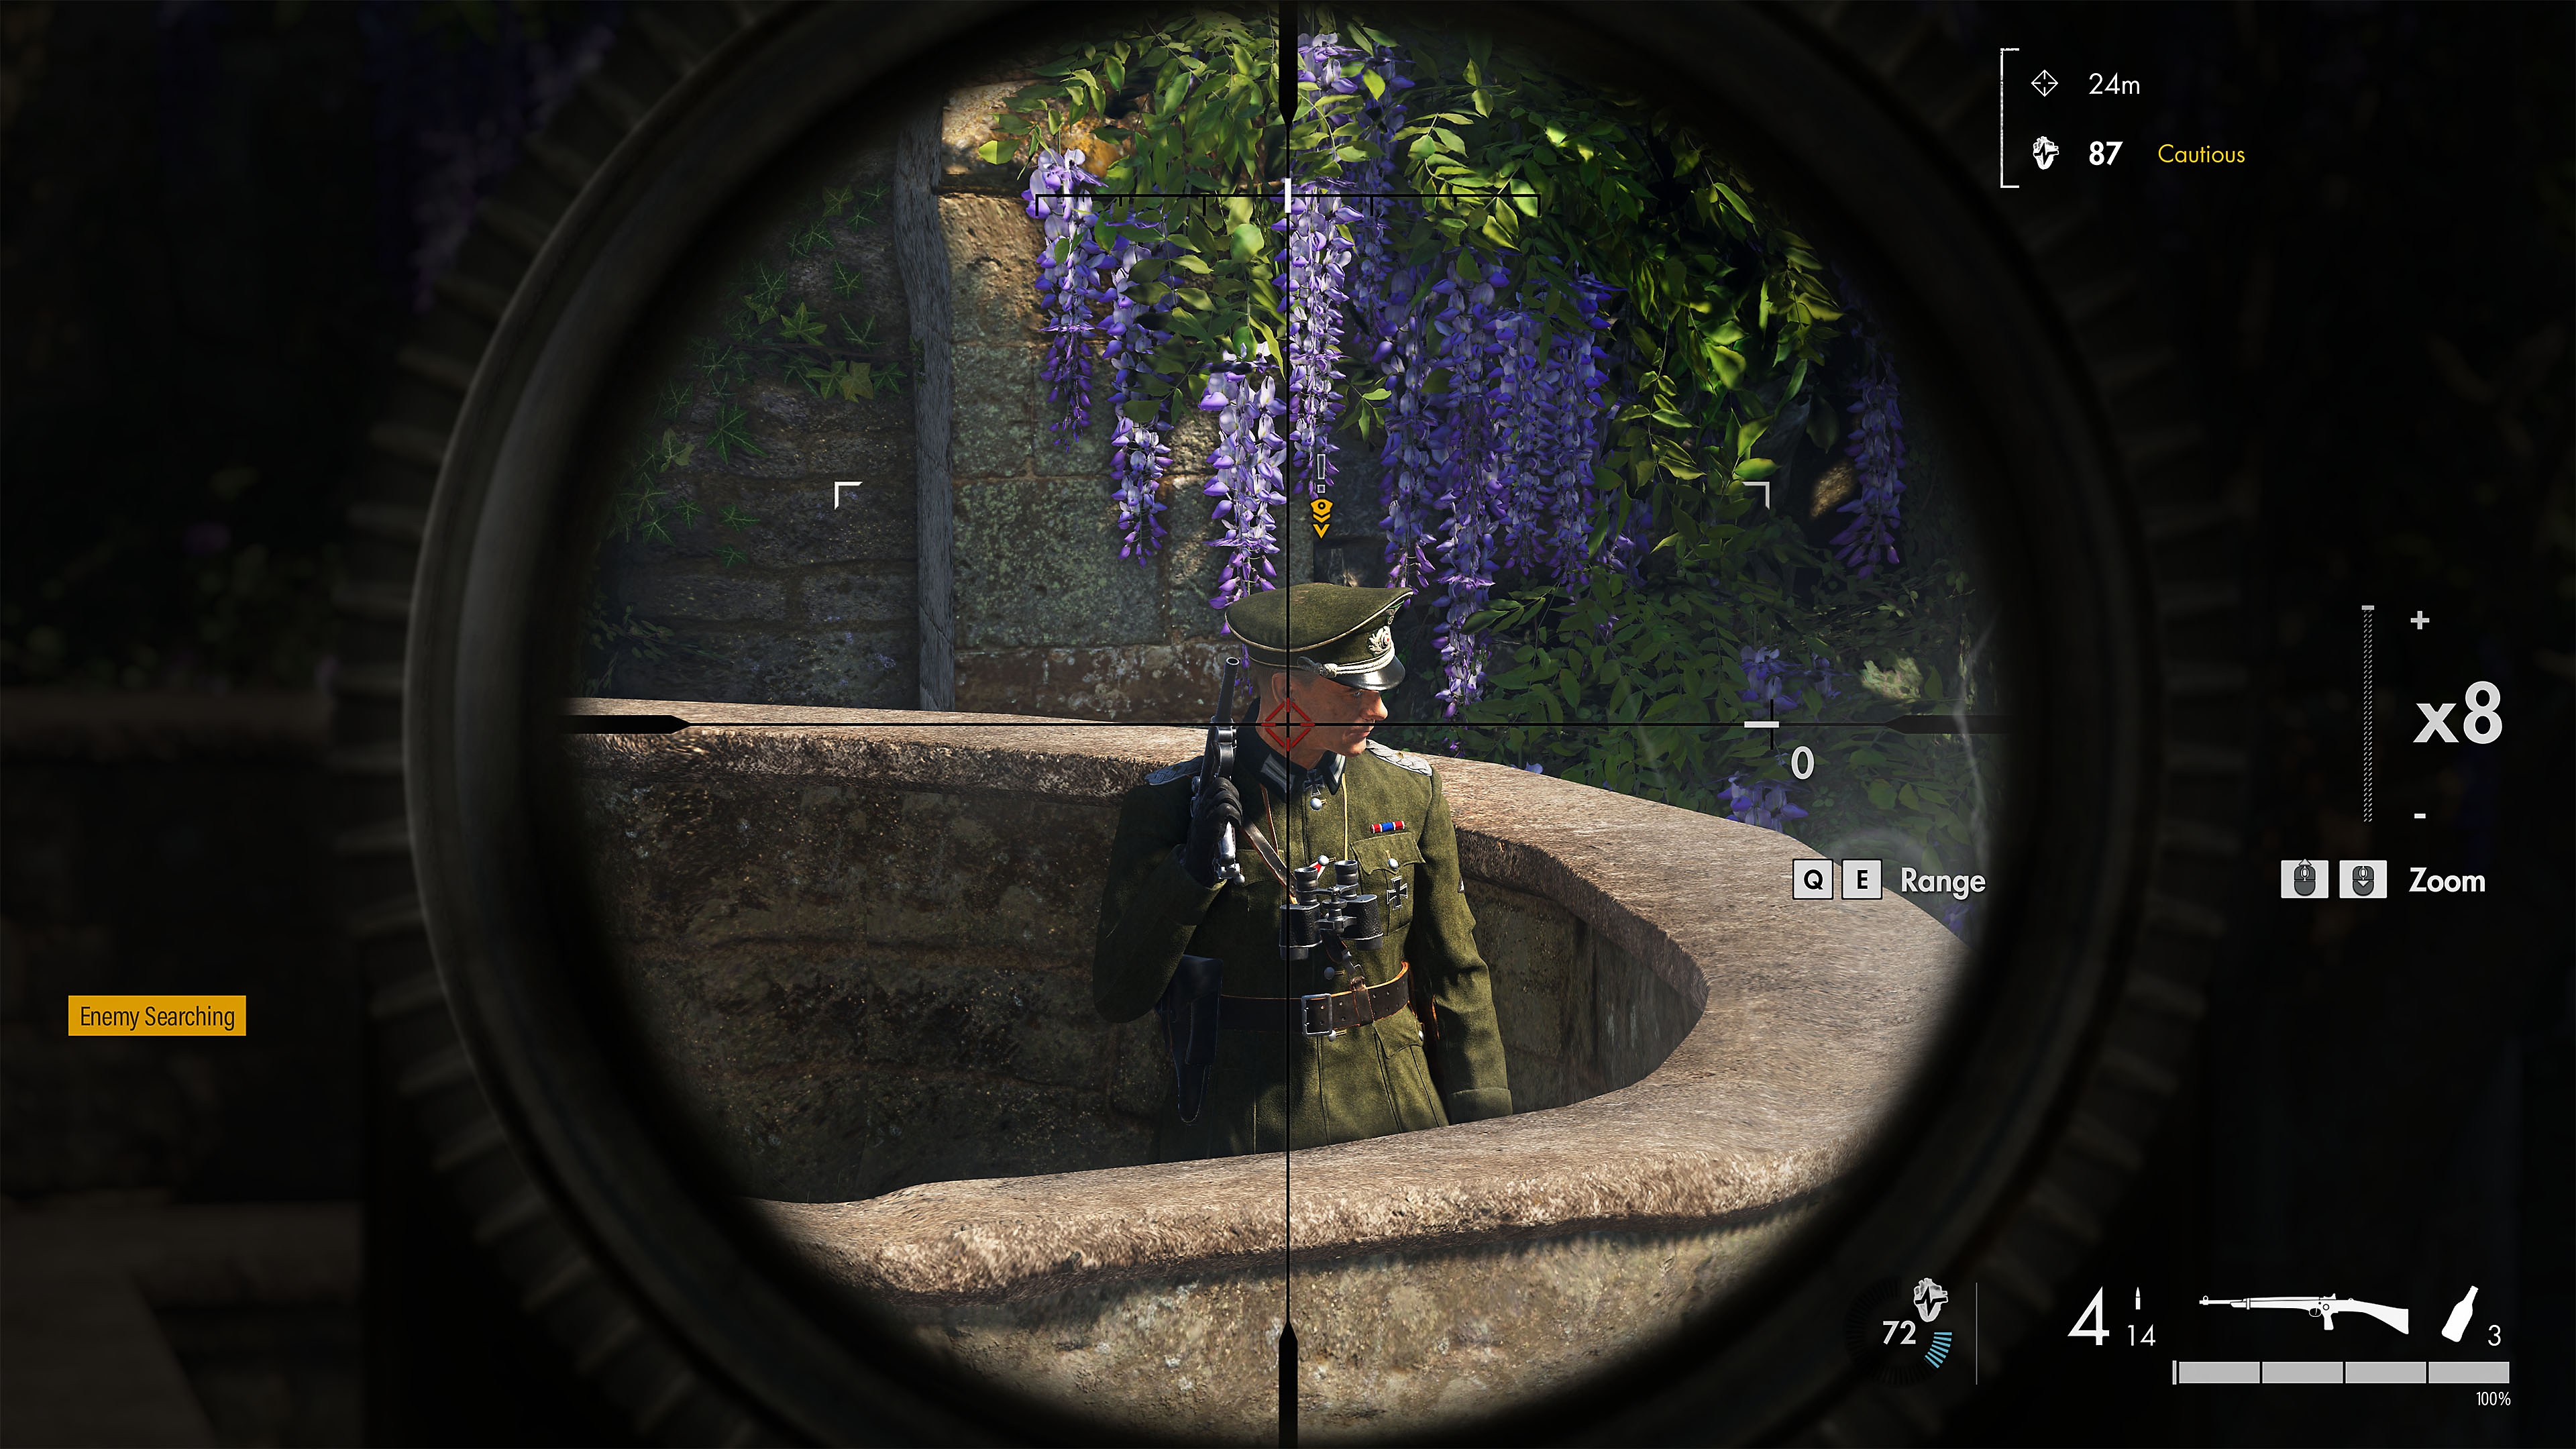 Snimka zaslona iz igre Sniper Elite 5 koja prikazuje neprijatelja na nišanu snajpera